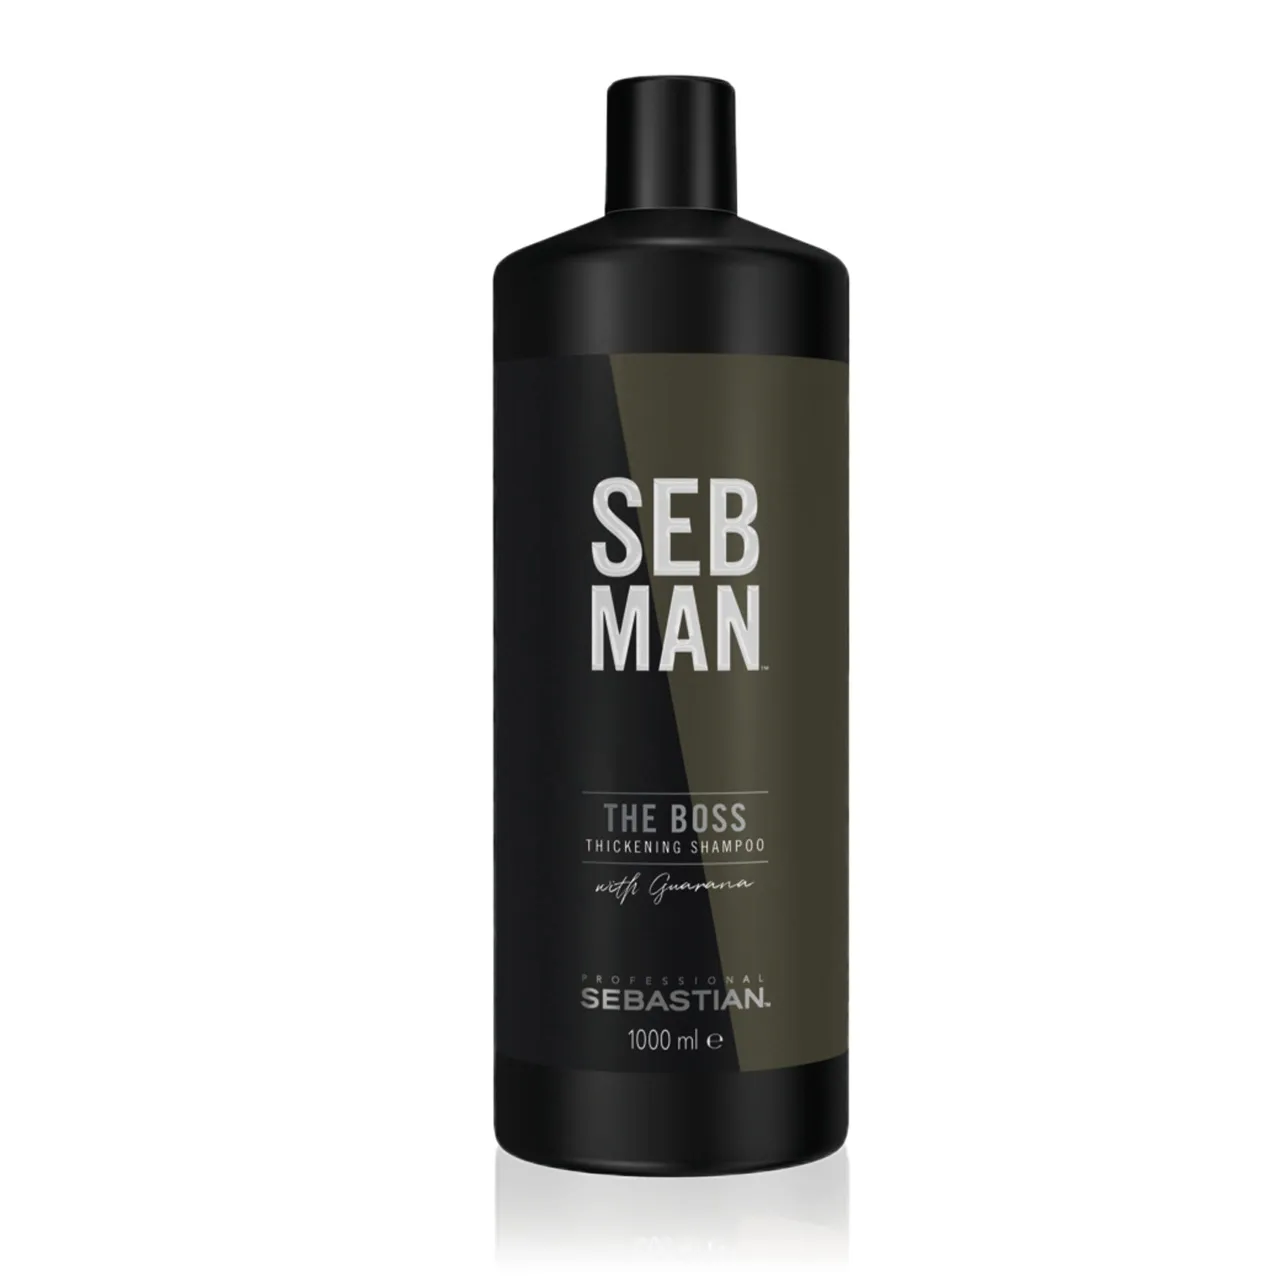 SEB MAN THE BOSS – verdichtendes Volumenshampoo für mehr